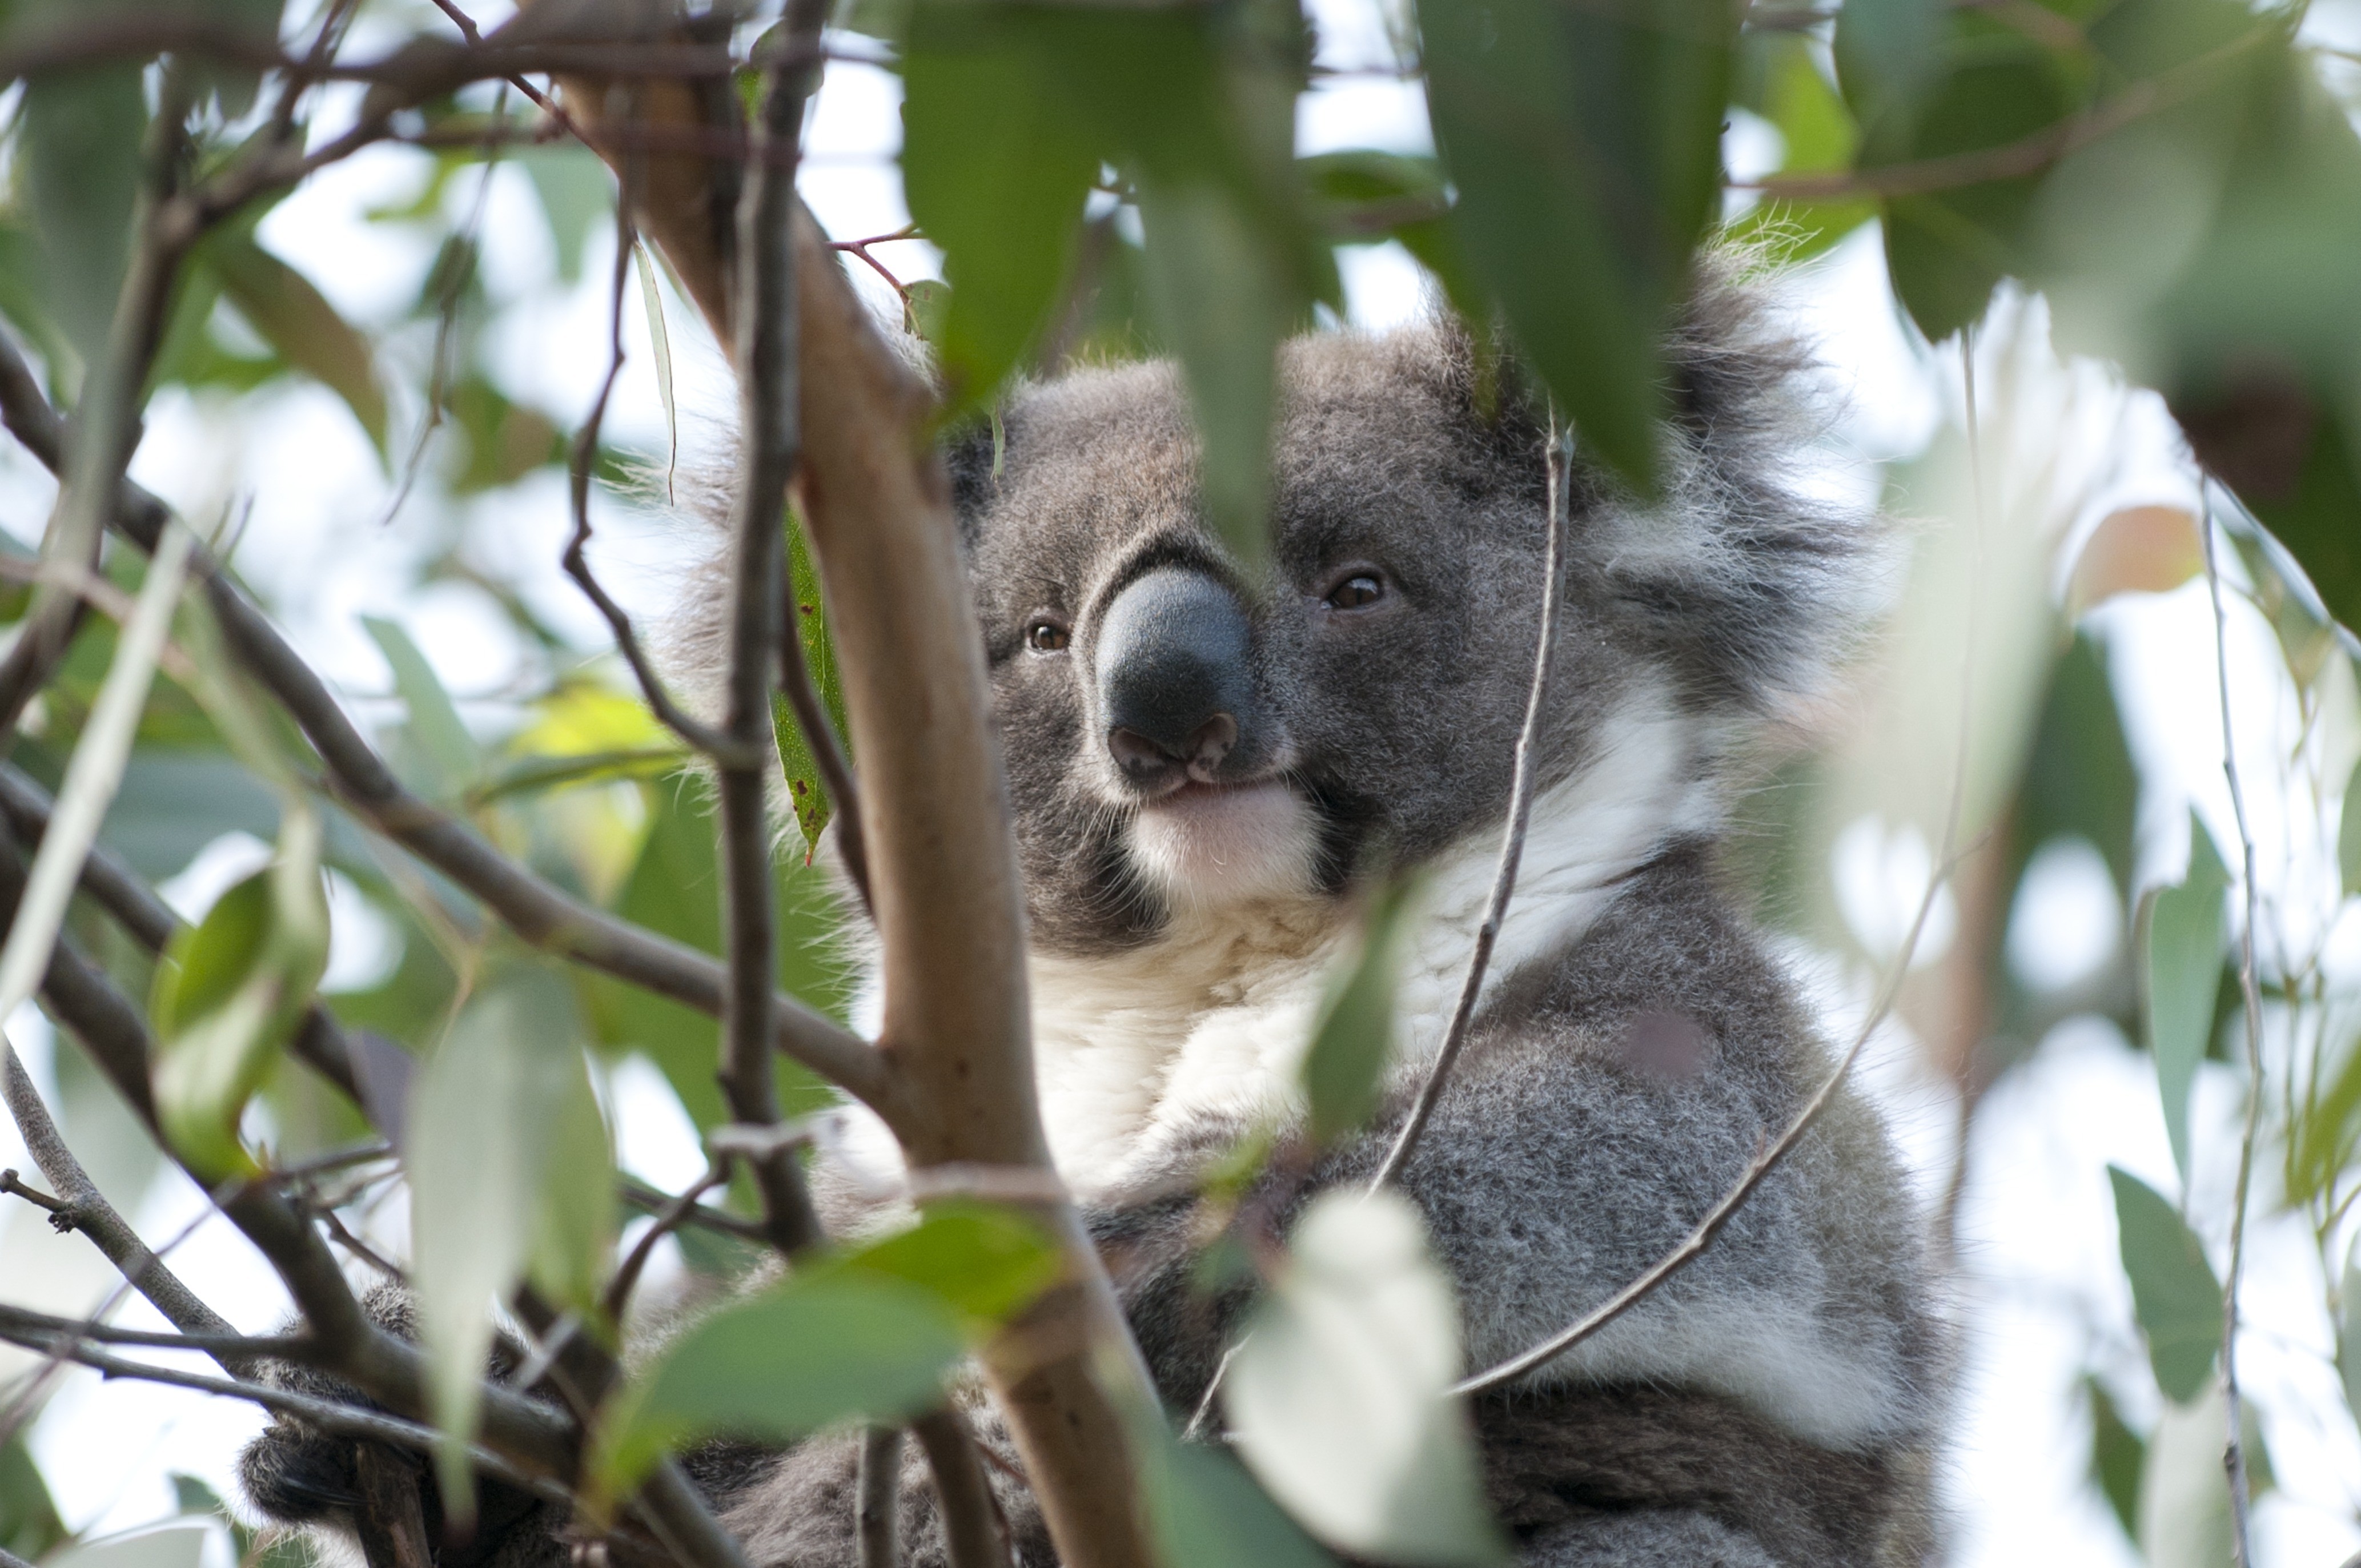 Koala sitting in a tree